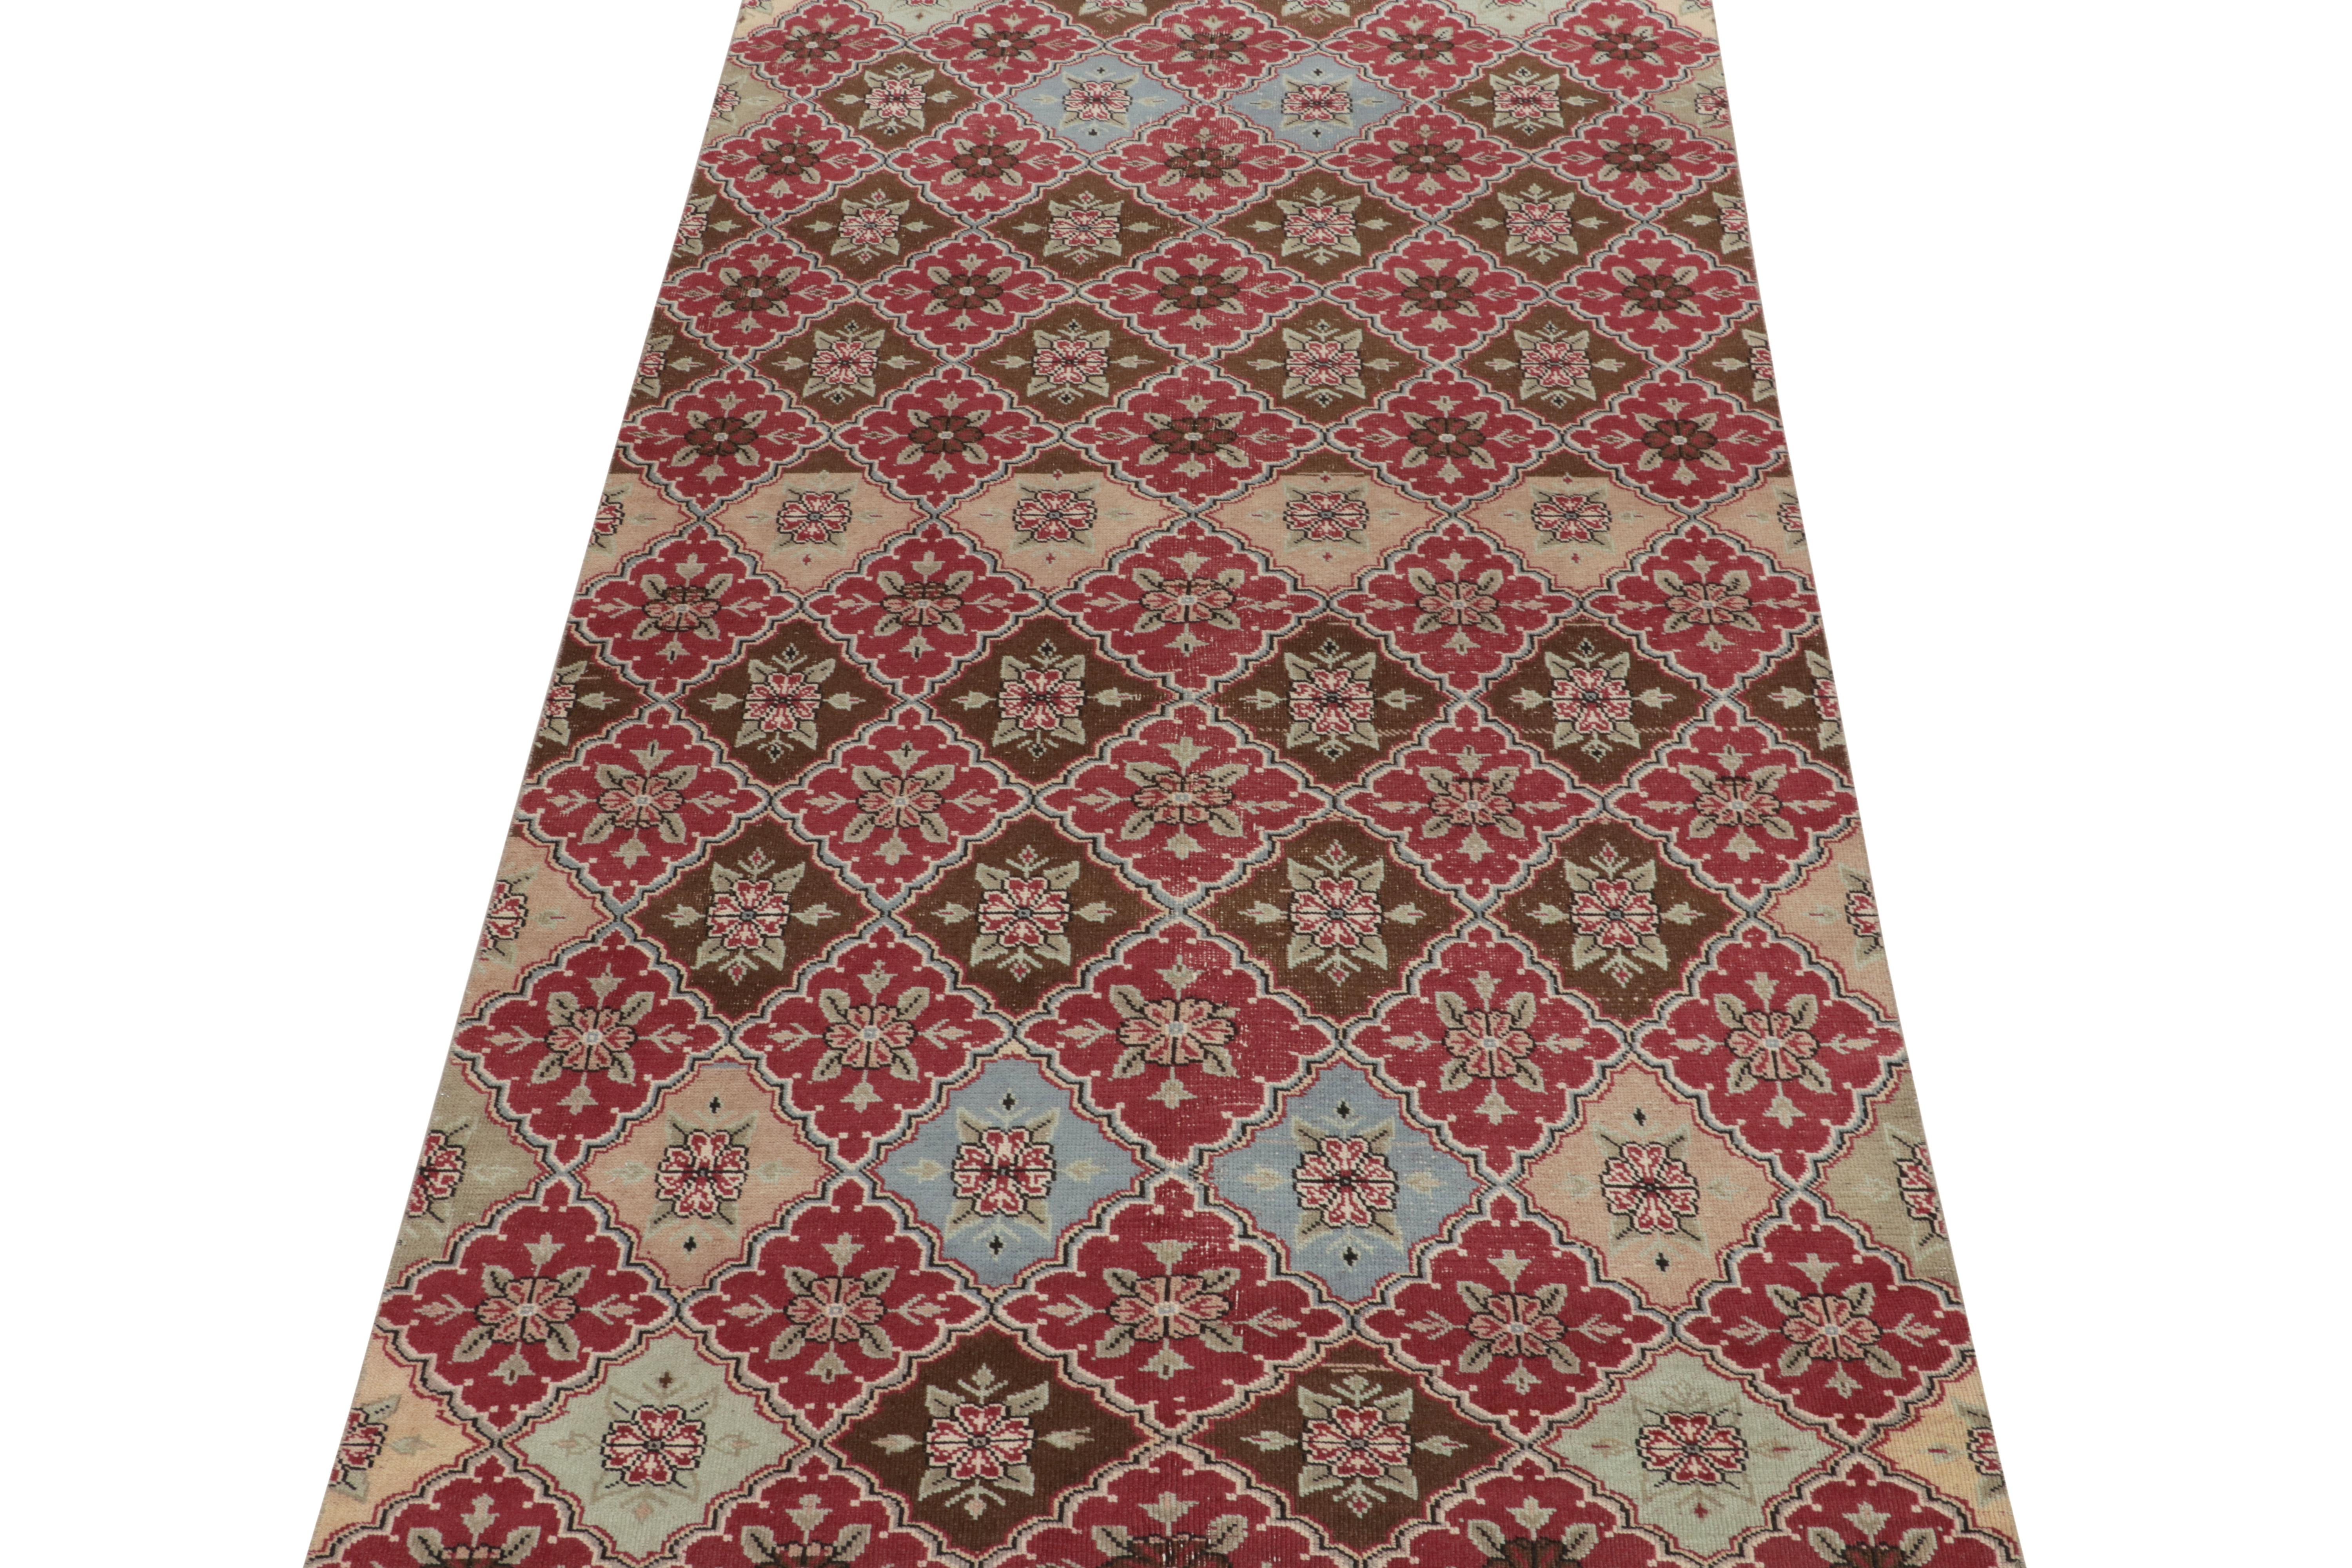 Dieser Teppich im Format 5x9 ist ein Beispiel für türkische Art-Déco-Sensibilität und gehört zu den jüngsten Neuzugängen in unserer Mid Century Pasha Collection. 

Dieses Stück aus den 1960er Jahren stammt von einem kühnen türkischen Designer und